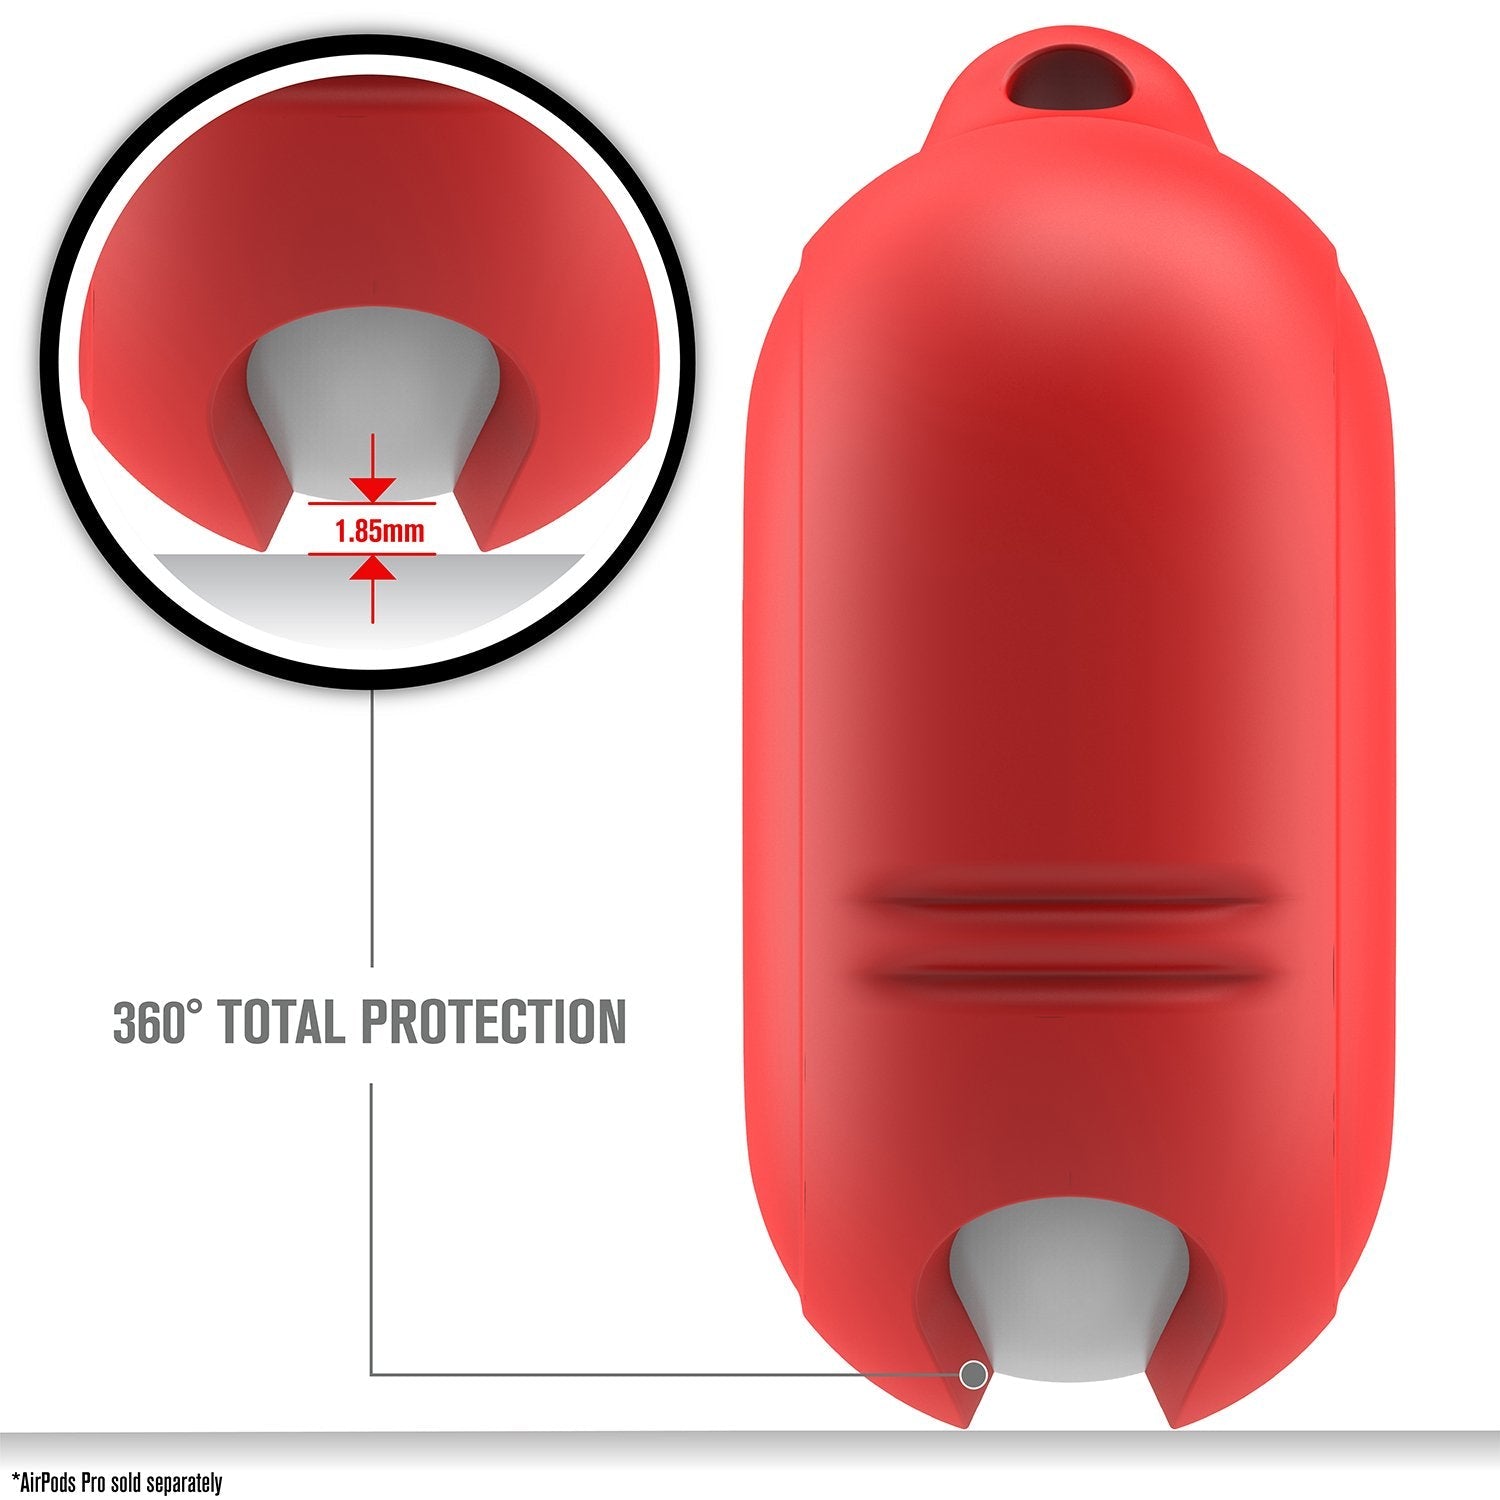 AirPods Pro (Gen 2/1) - Waterproof Case + Carabiner-EU